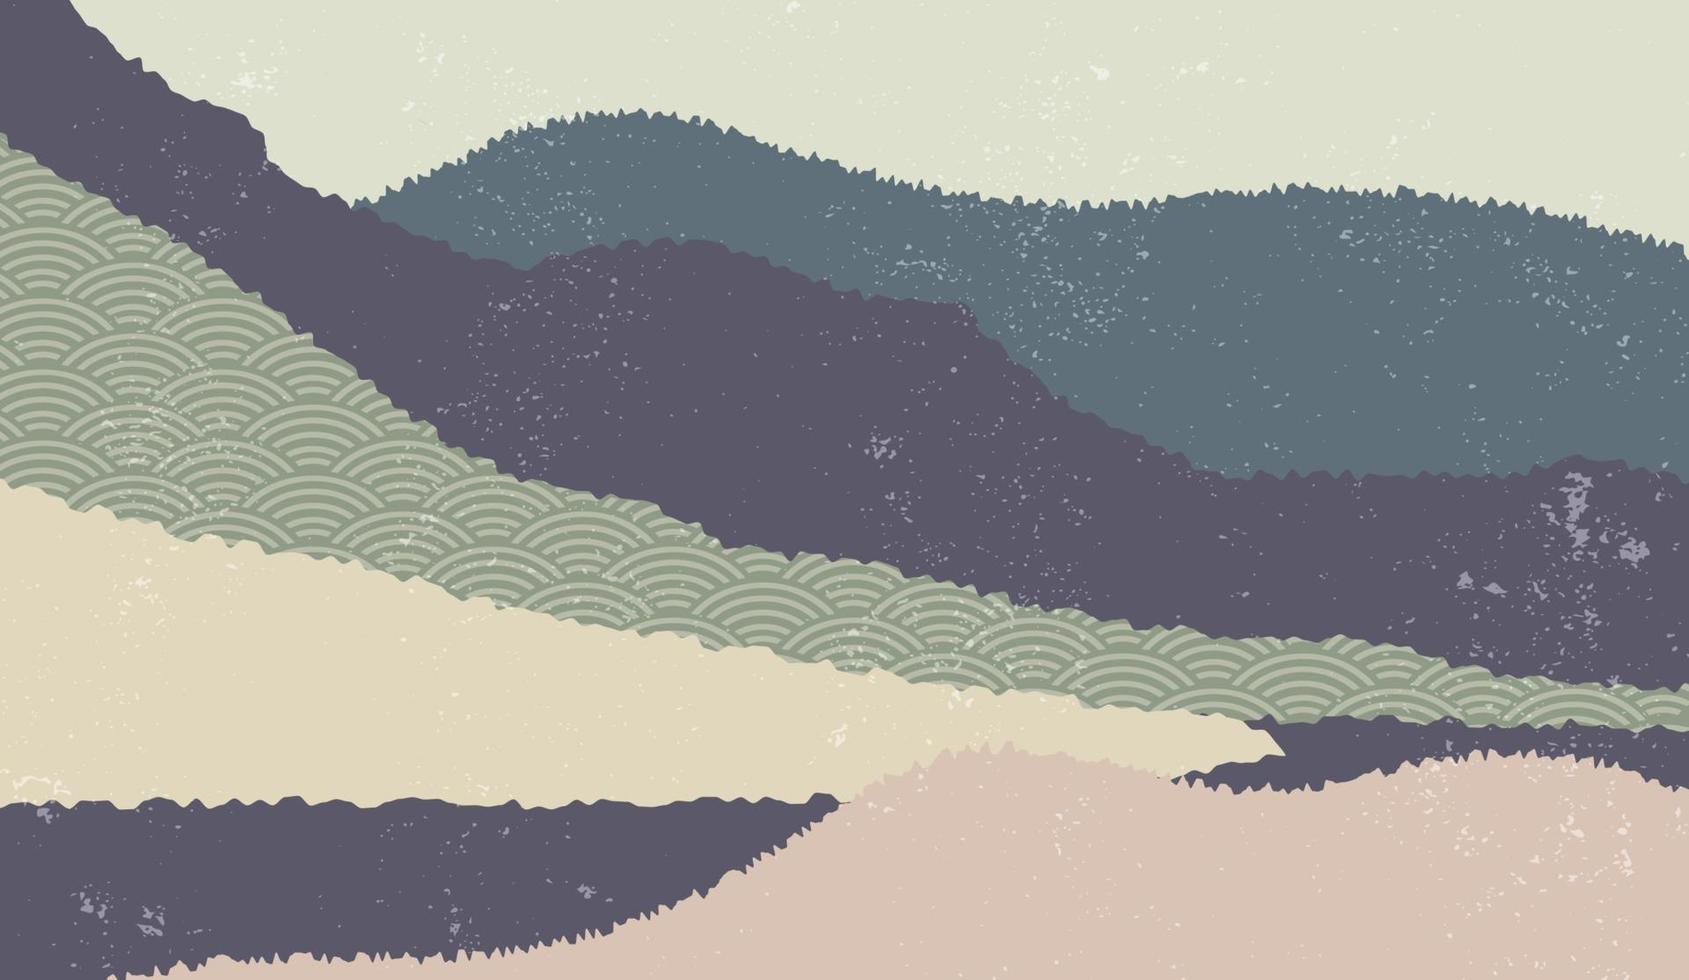 fundo da paisagem com paisagens montanhosas decoradas com padrão de onda japonês. ilustração vetorial de tema de viagem e aventura com paisagem de natureza abstrata vetor